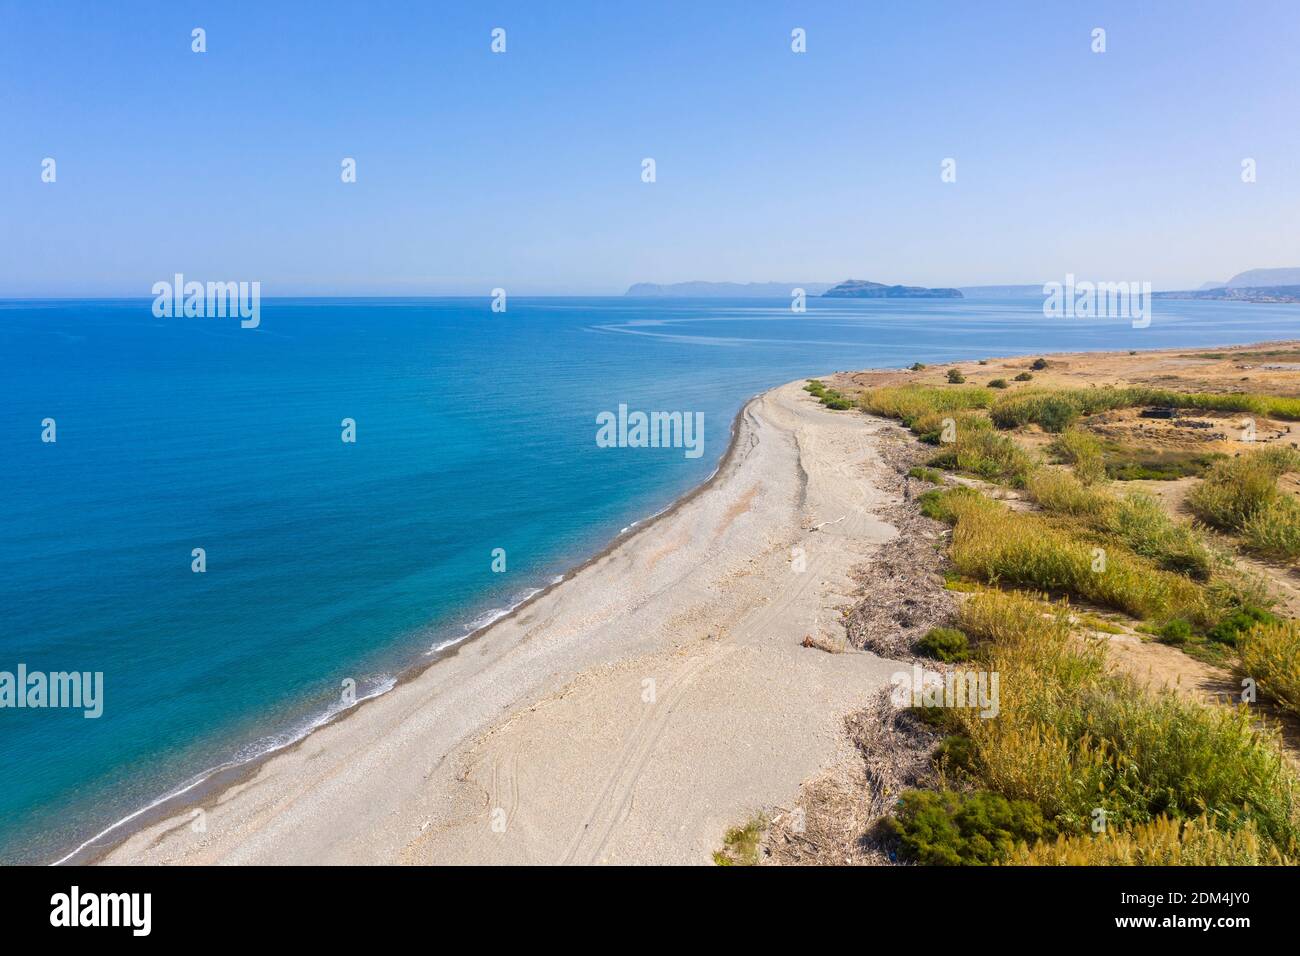 Vista aérea costera de la playa no desarrollada en Tavronitis, Creta, Grecia Foto de stock